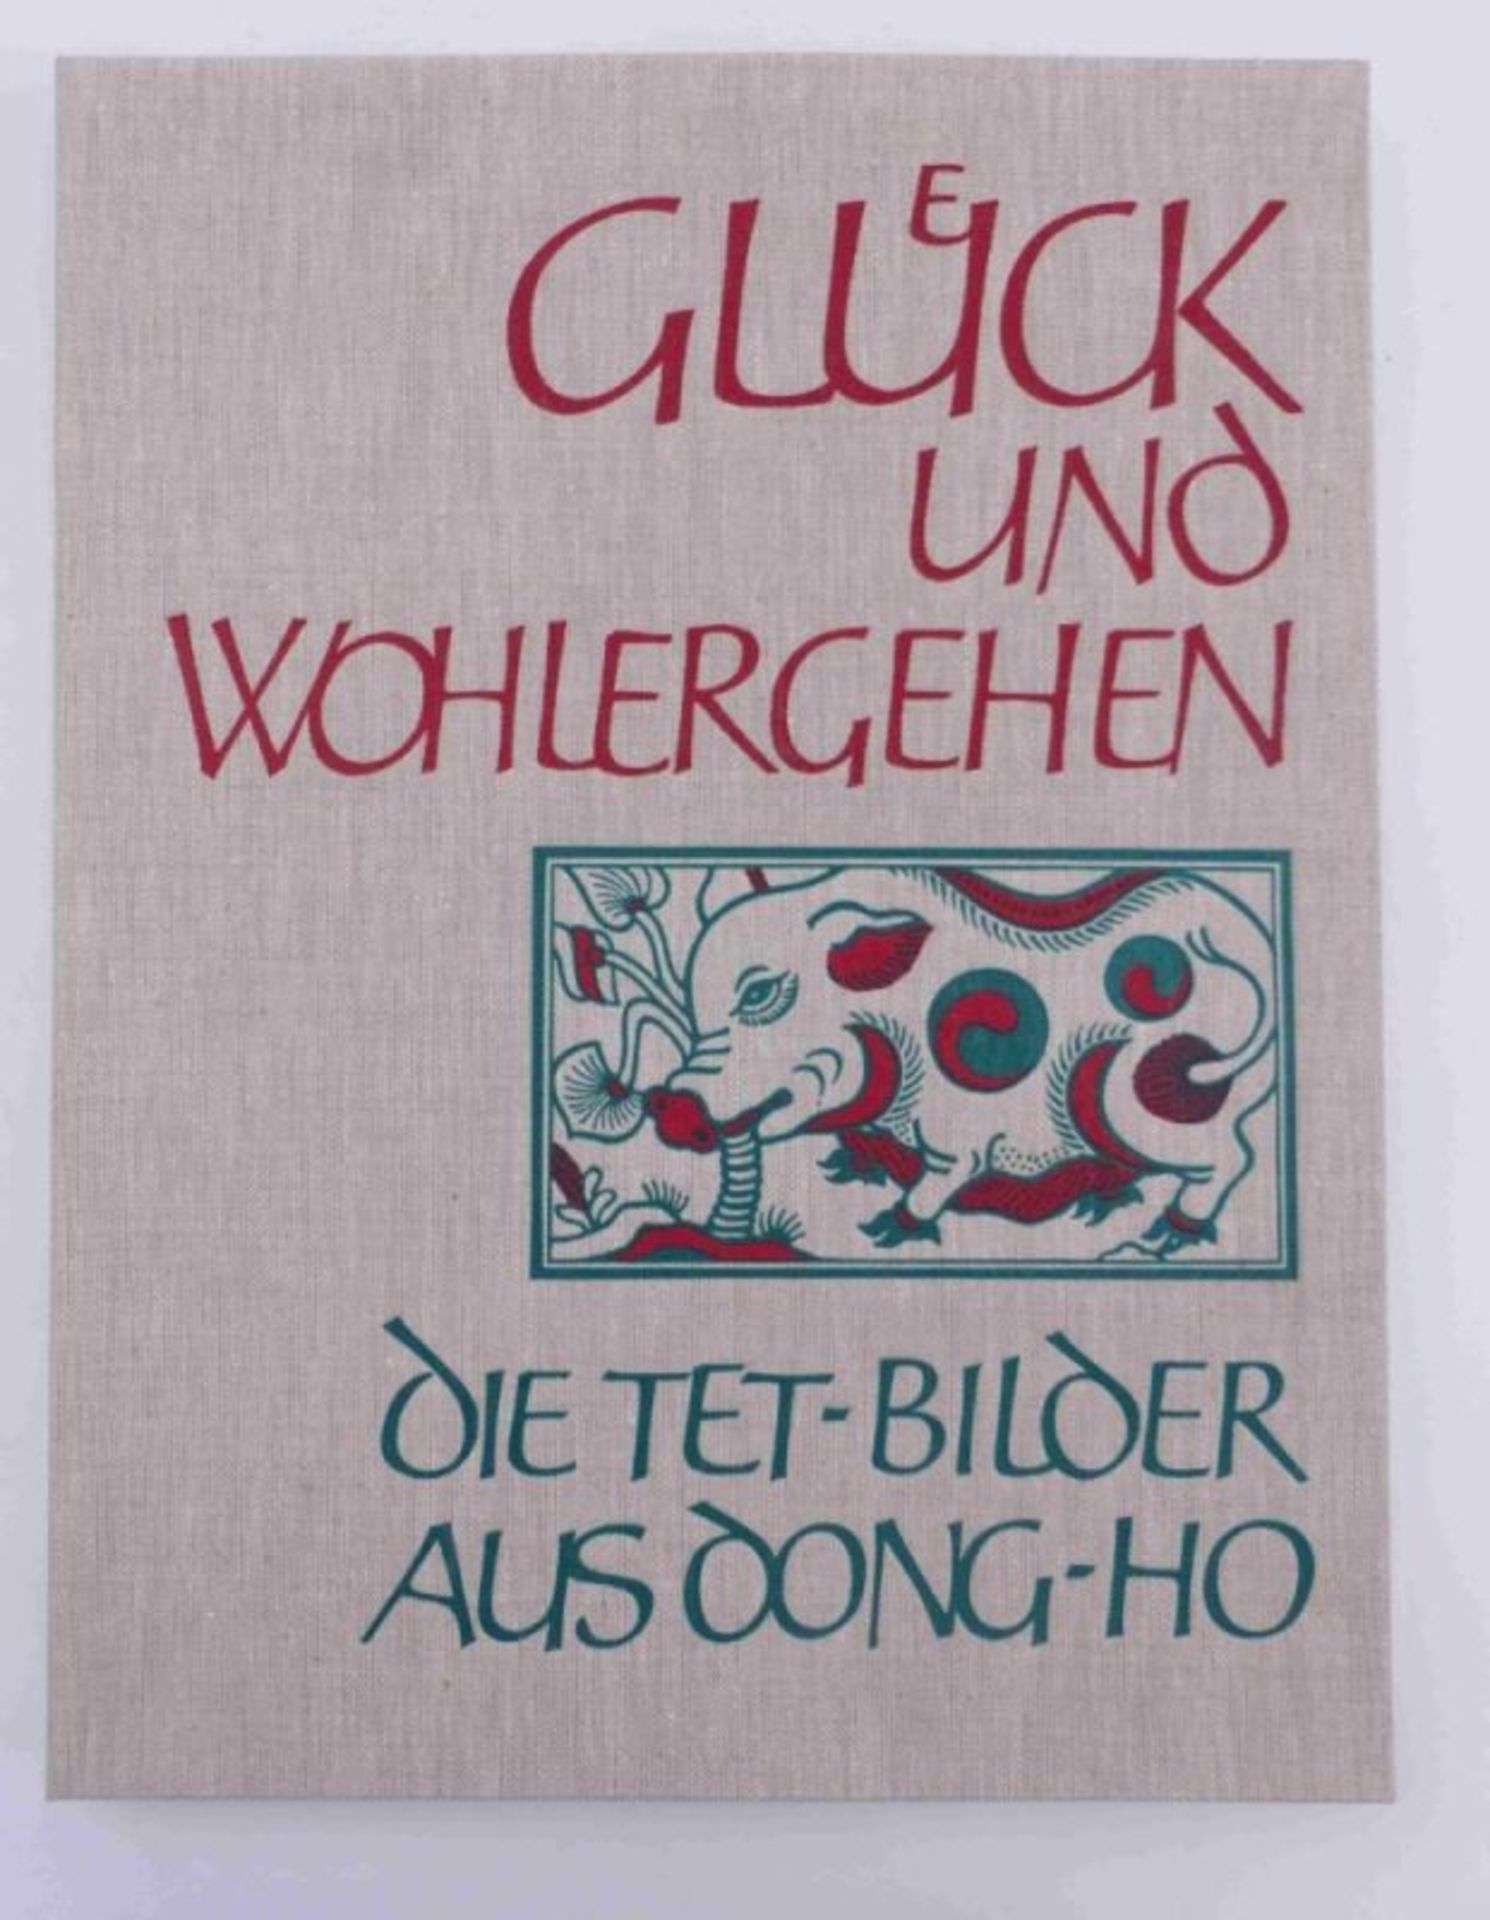 Rudolf Meyer (Text): Glück und Wohlergehen, Die Tet-Bilder aus Dong-ho - Image 6 of 6